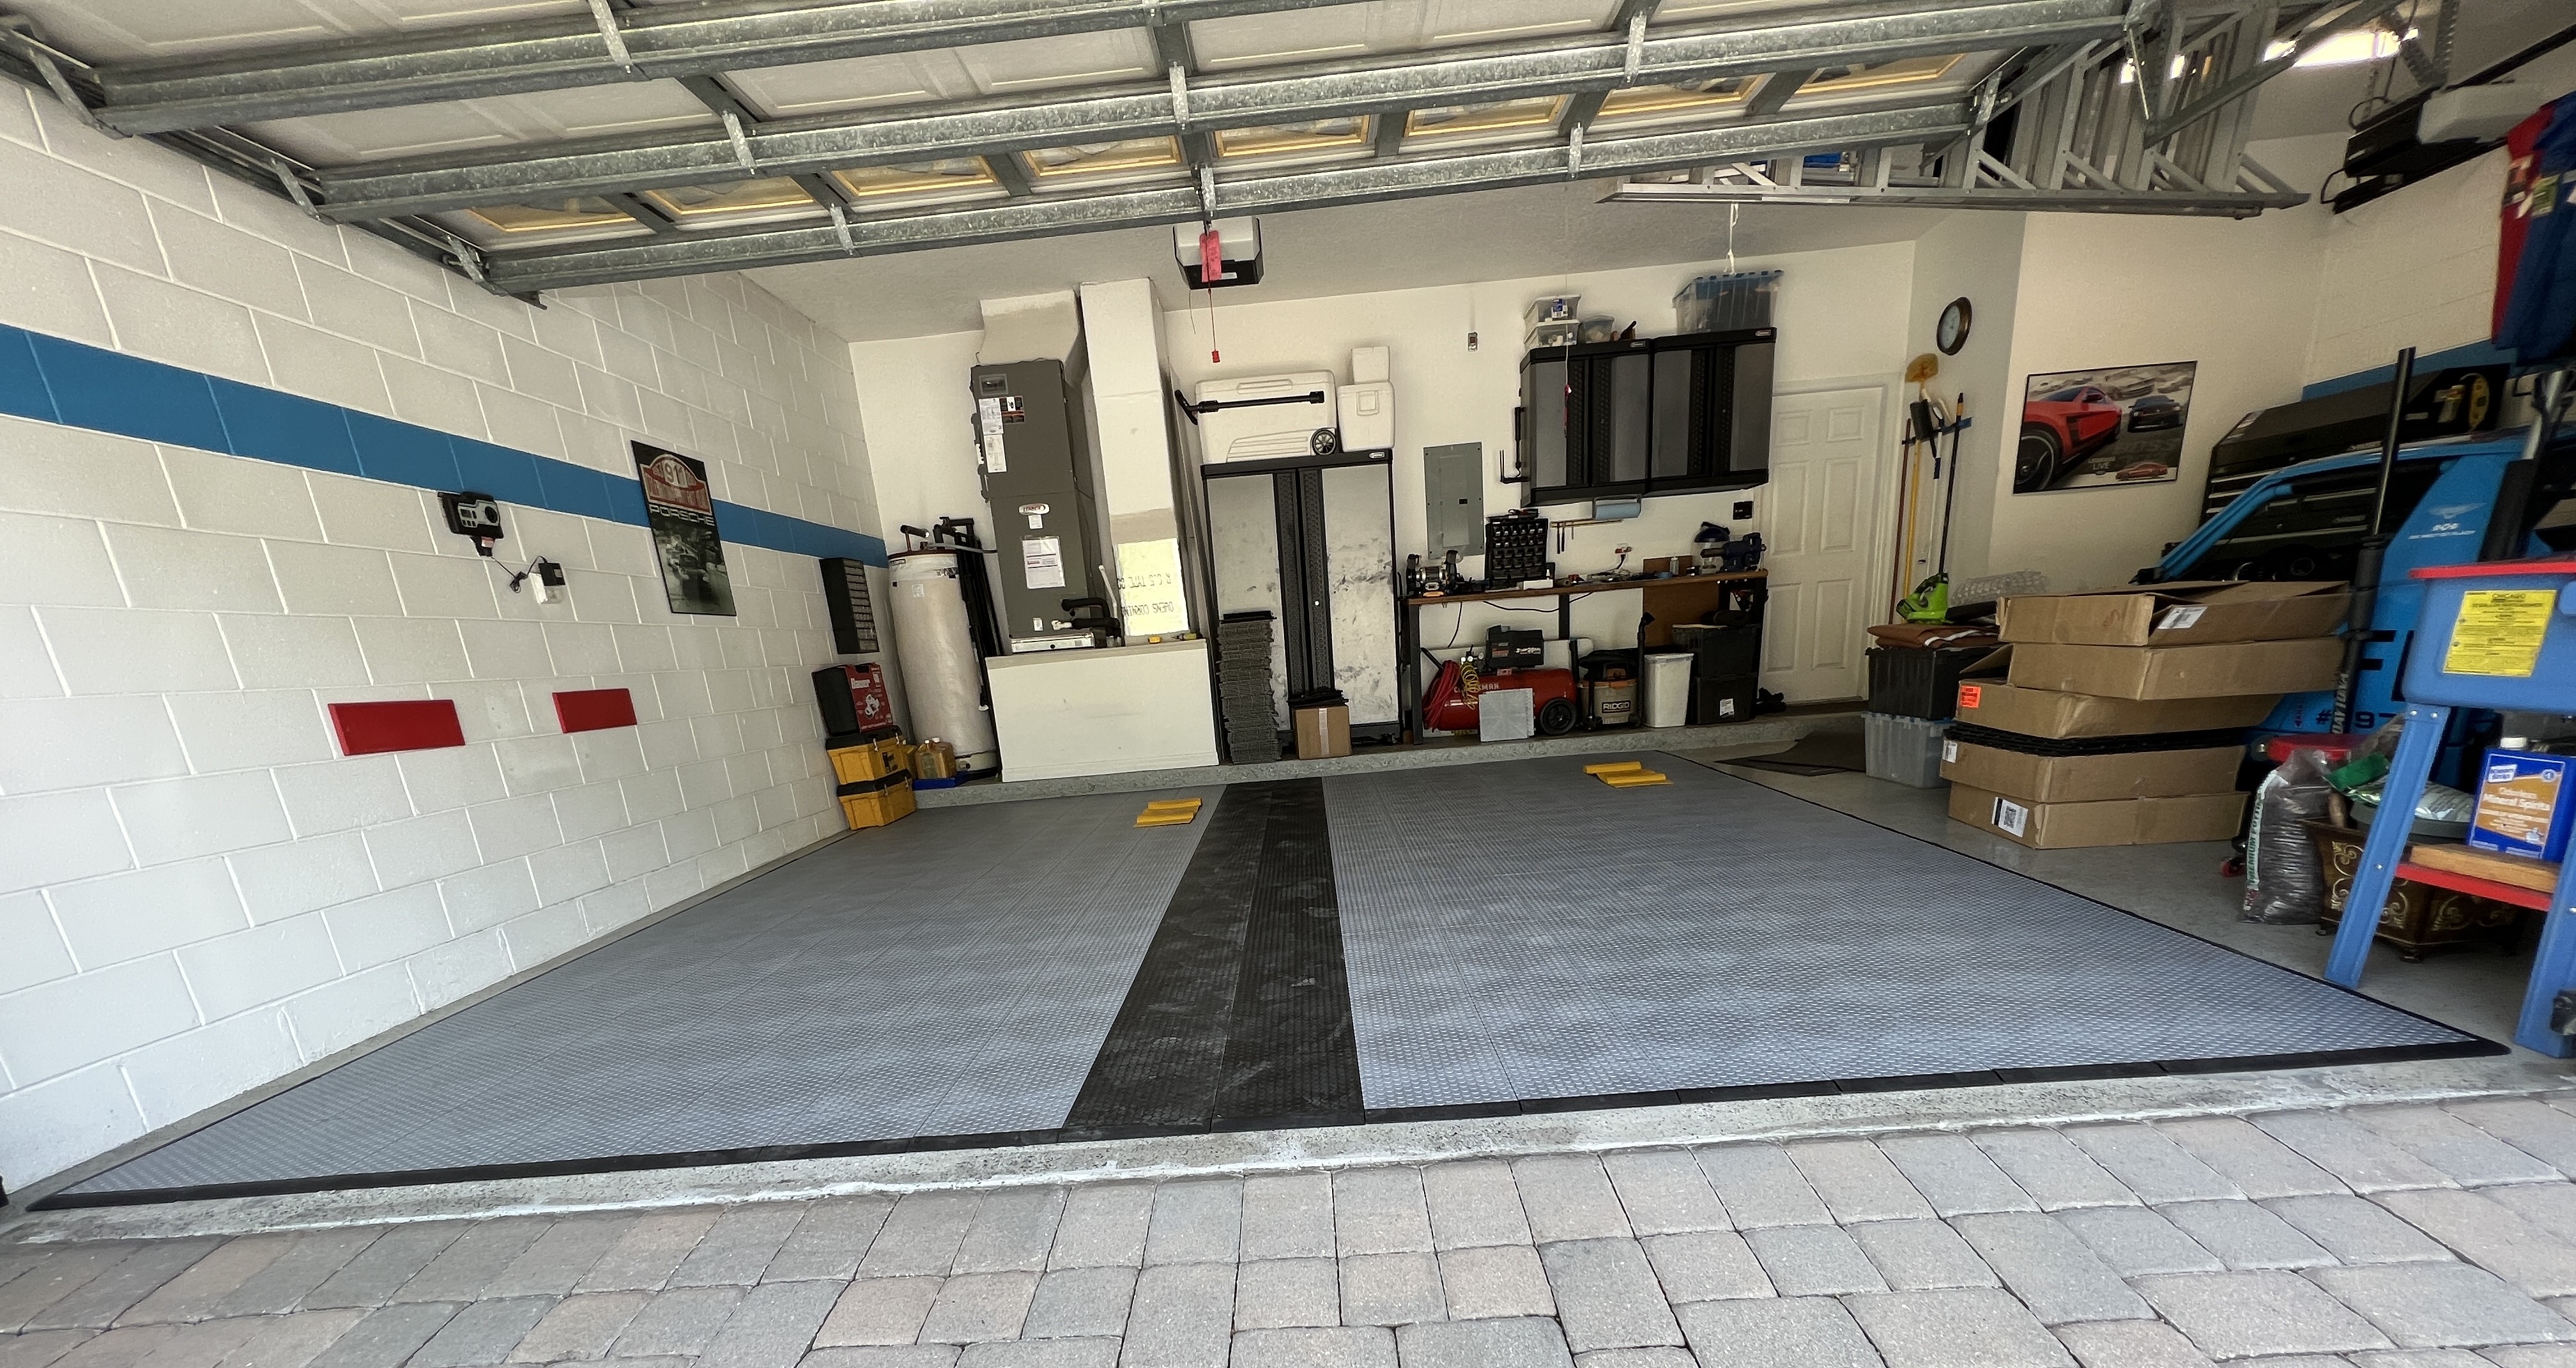 Best Garage Floor Tiles March 2022 - Garage Flooring LLC of Colorado